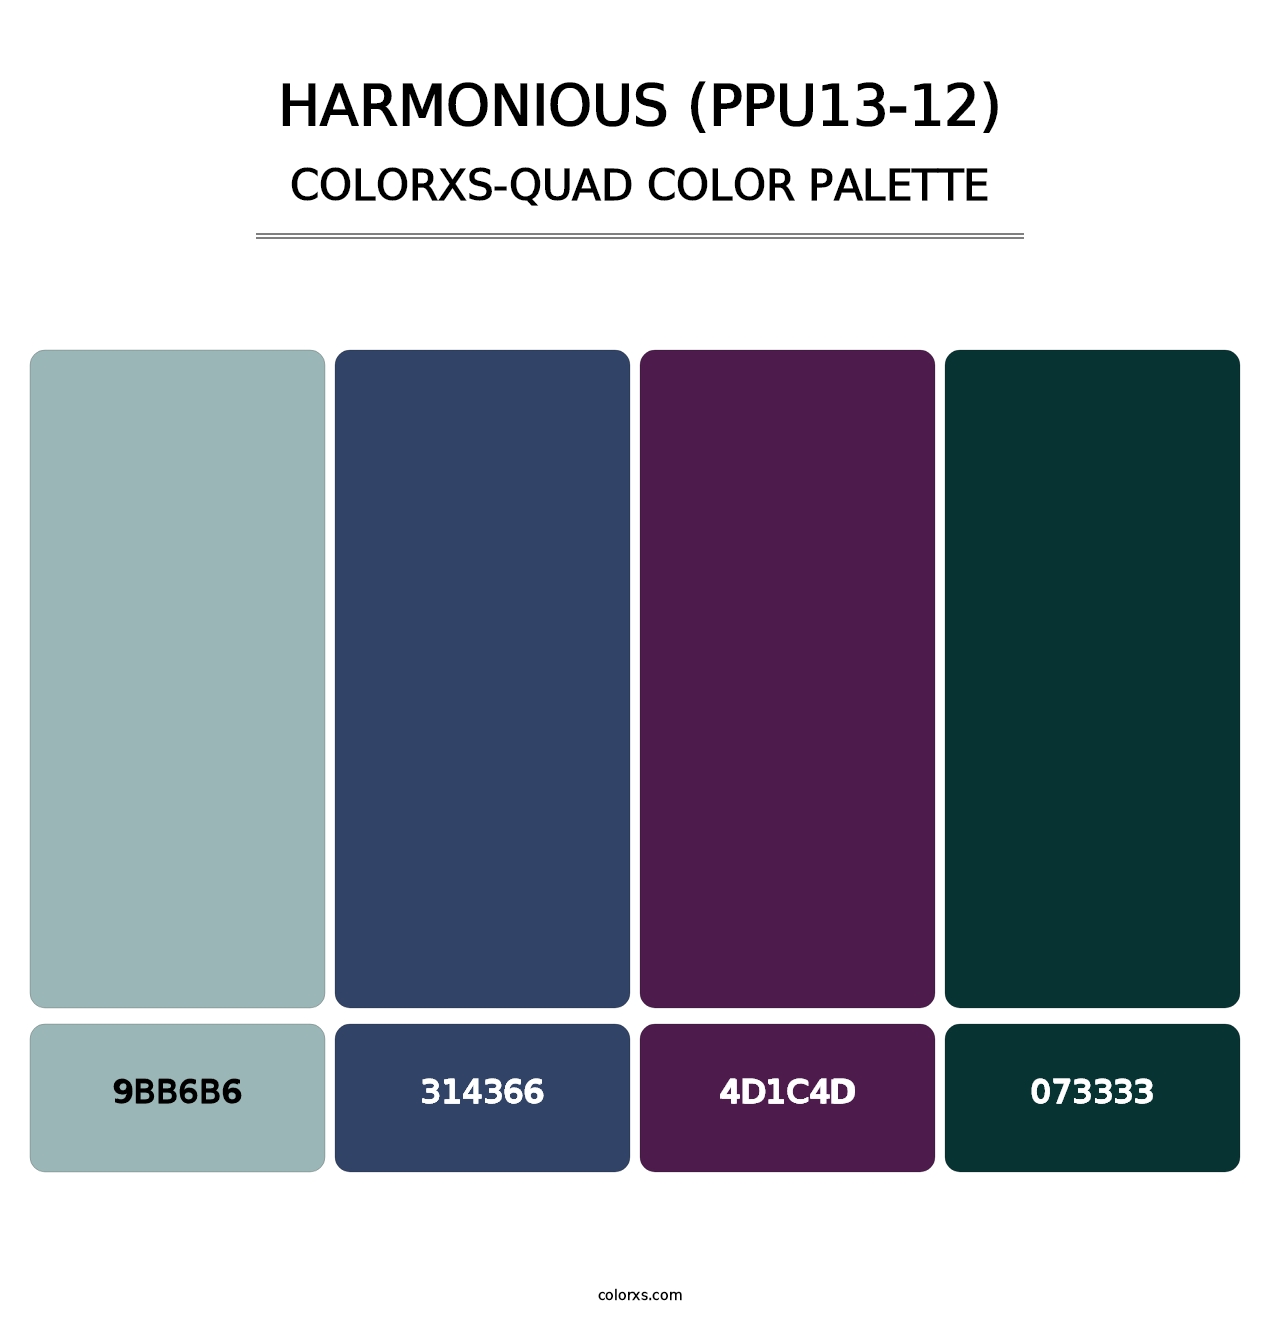 Harmonious (PPU13-12) - Colorxs Quad Palette